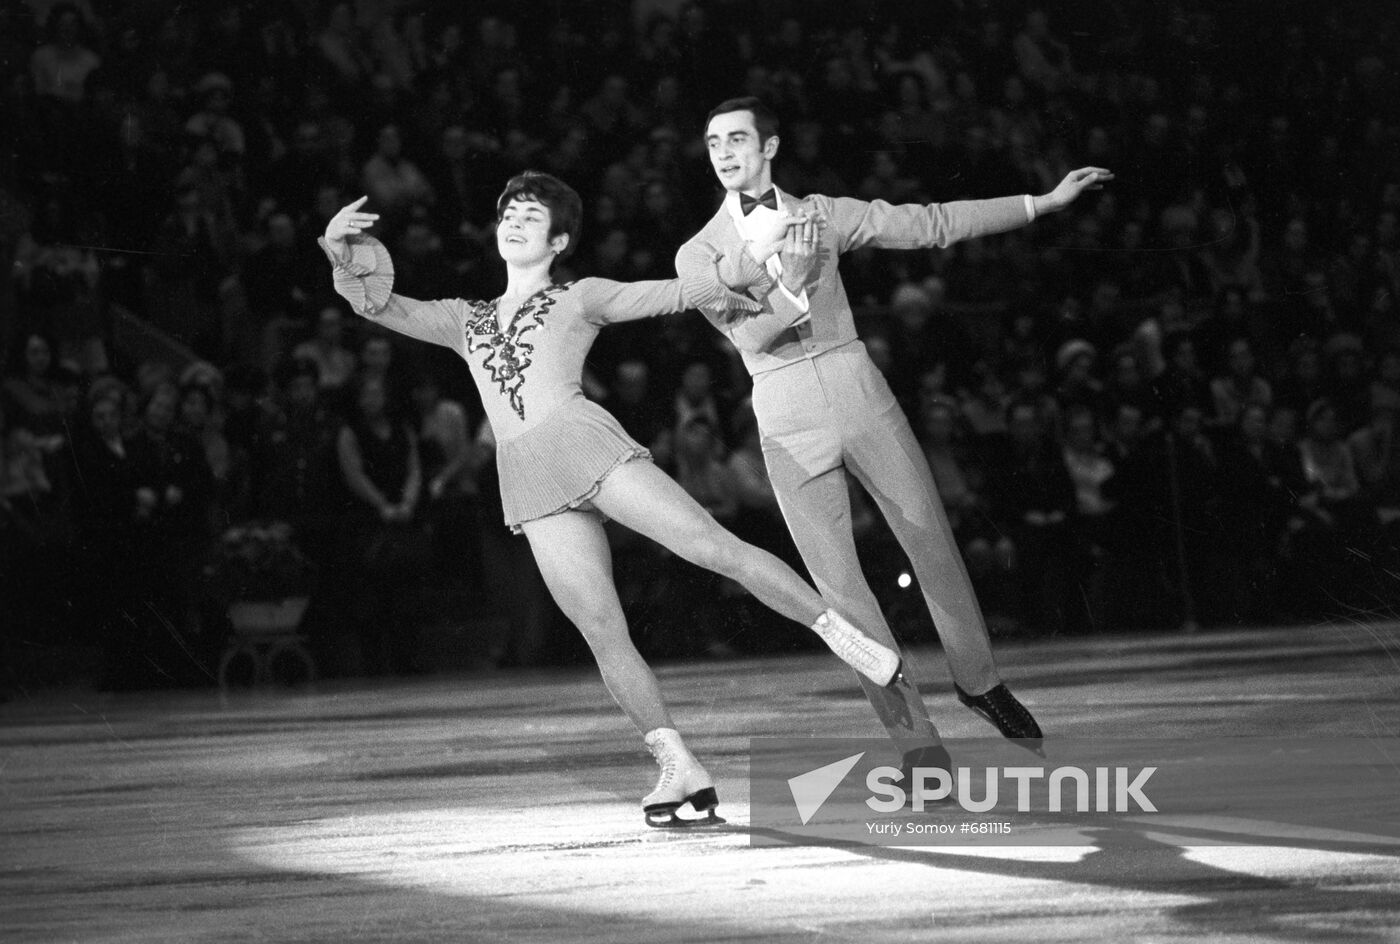 Figure skaters Lyudmila Pakhomova and Alexander Gorshkov